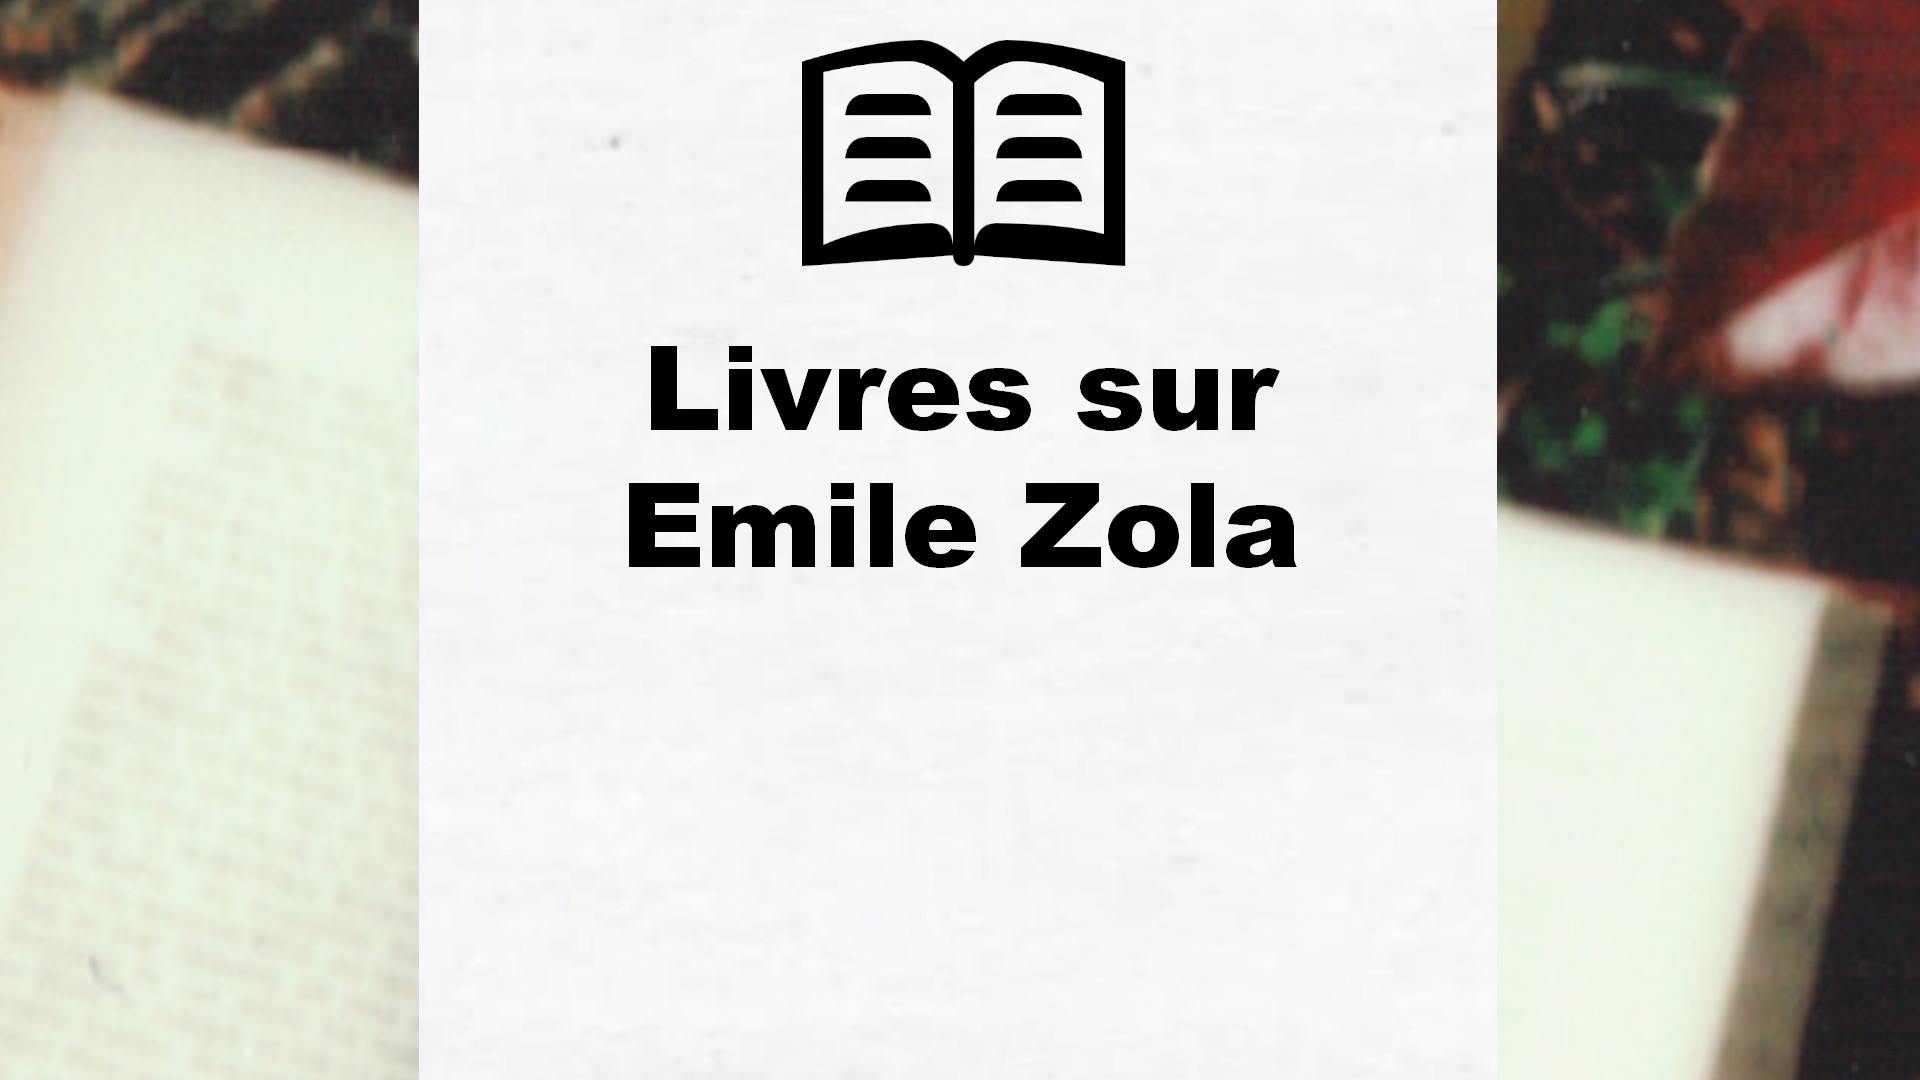 Livres sur Emile Zola